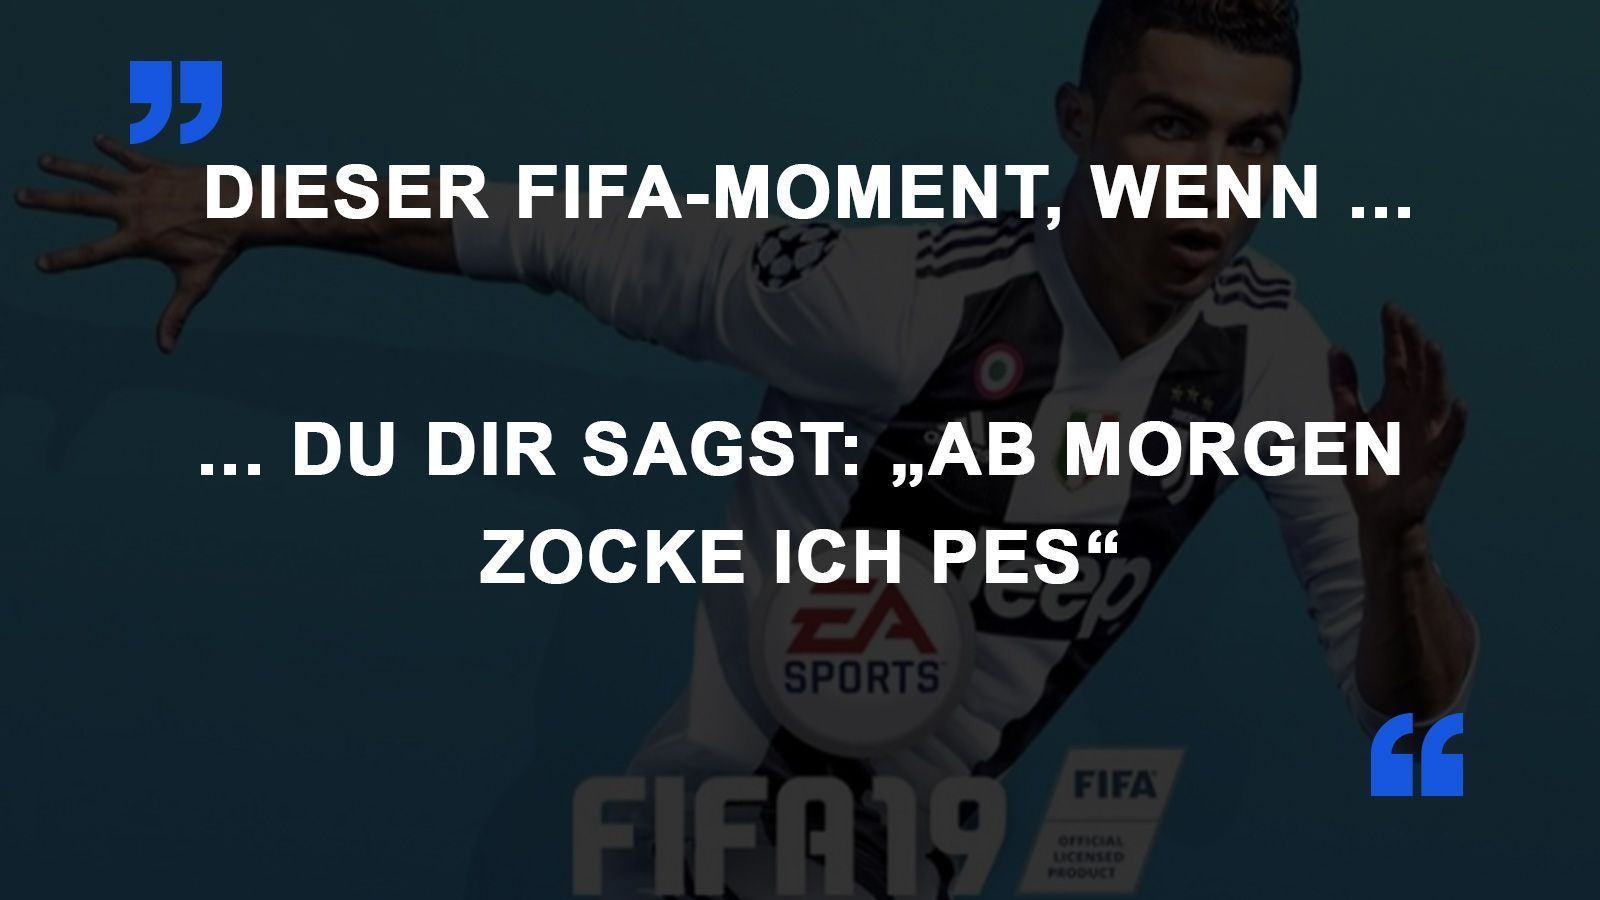 
                <strong>FIFA Momente PES</strong><br>
                
              